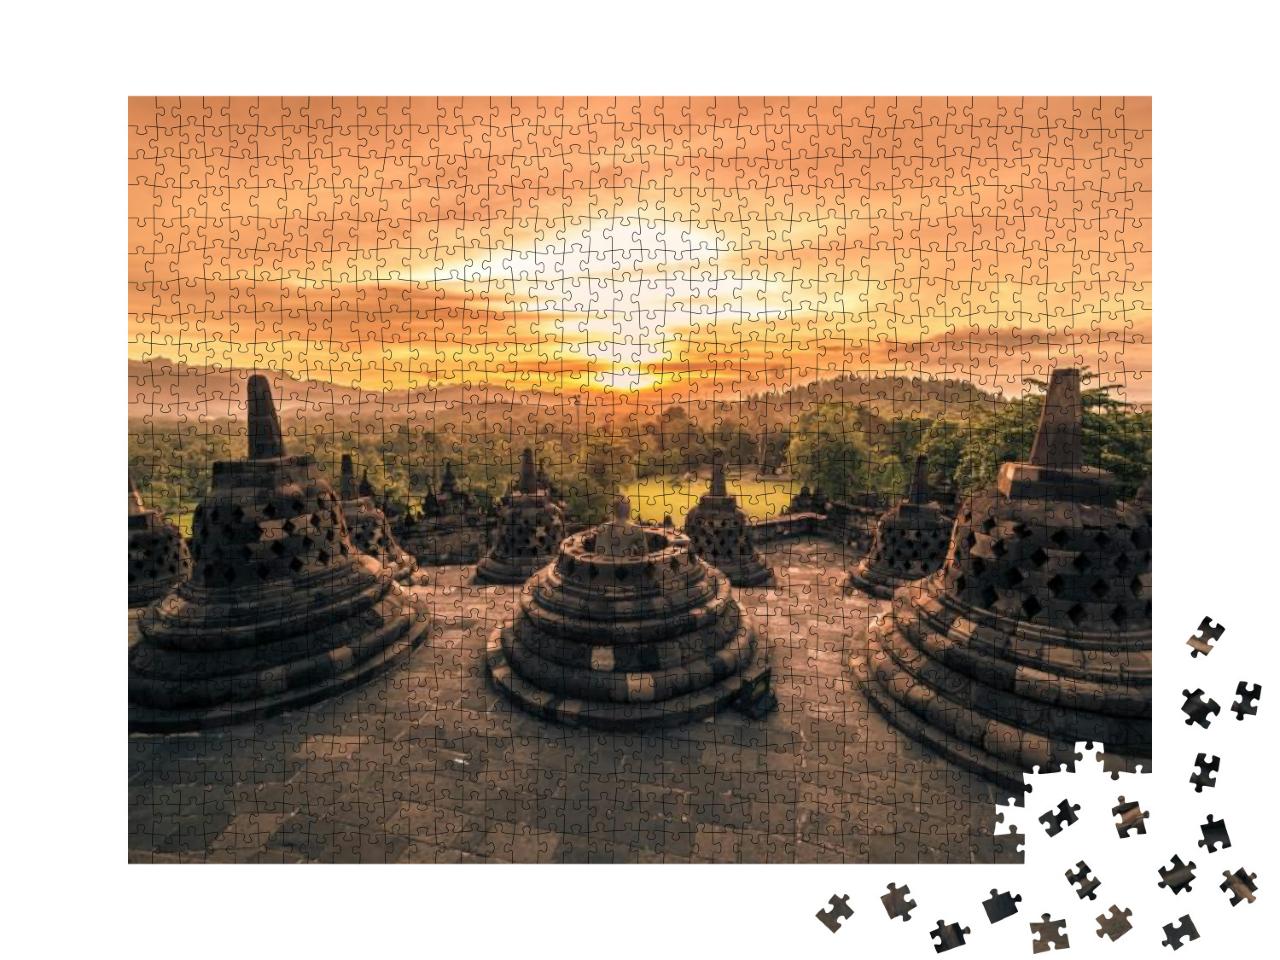 Dramatic Sunset Borobudur Temple At Sunset Yogyakarta, Ja... Jigsaw Puzzle with 1000 pieces